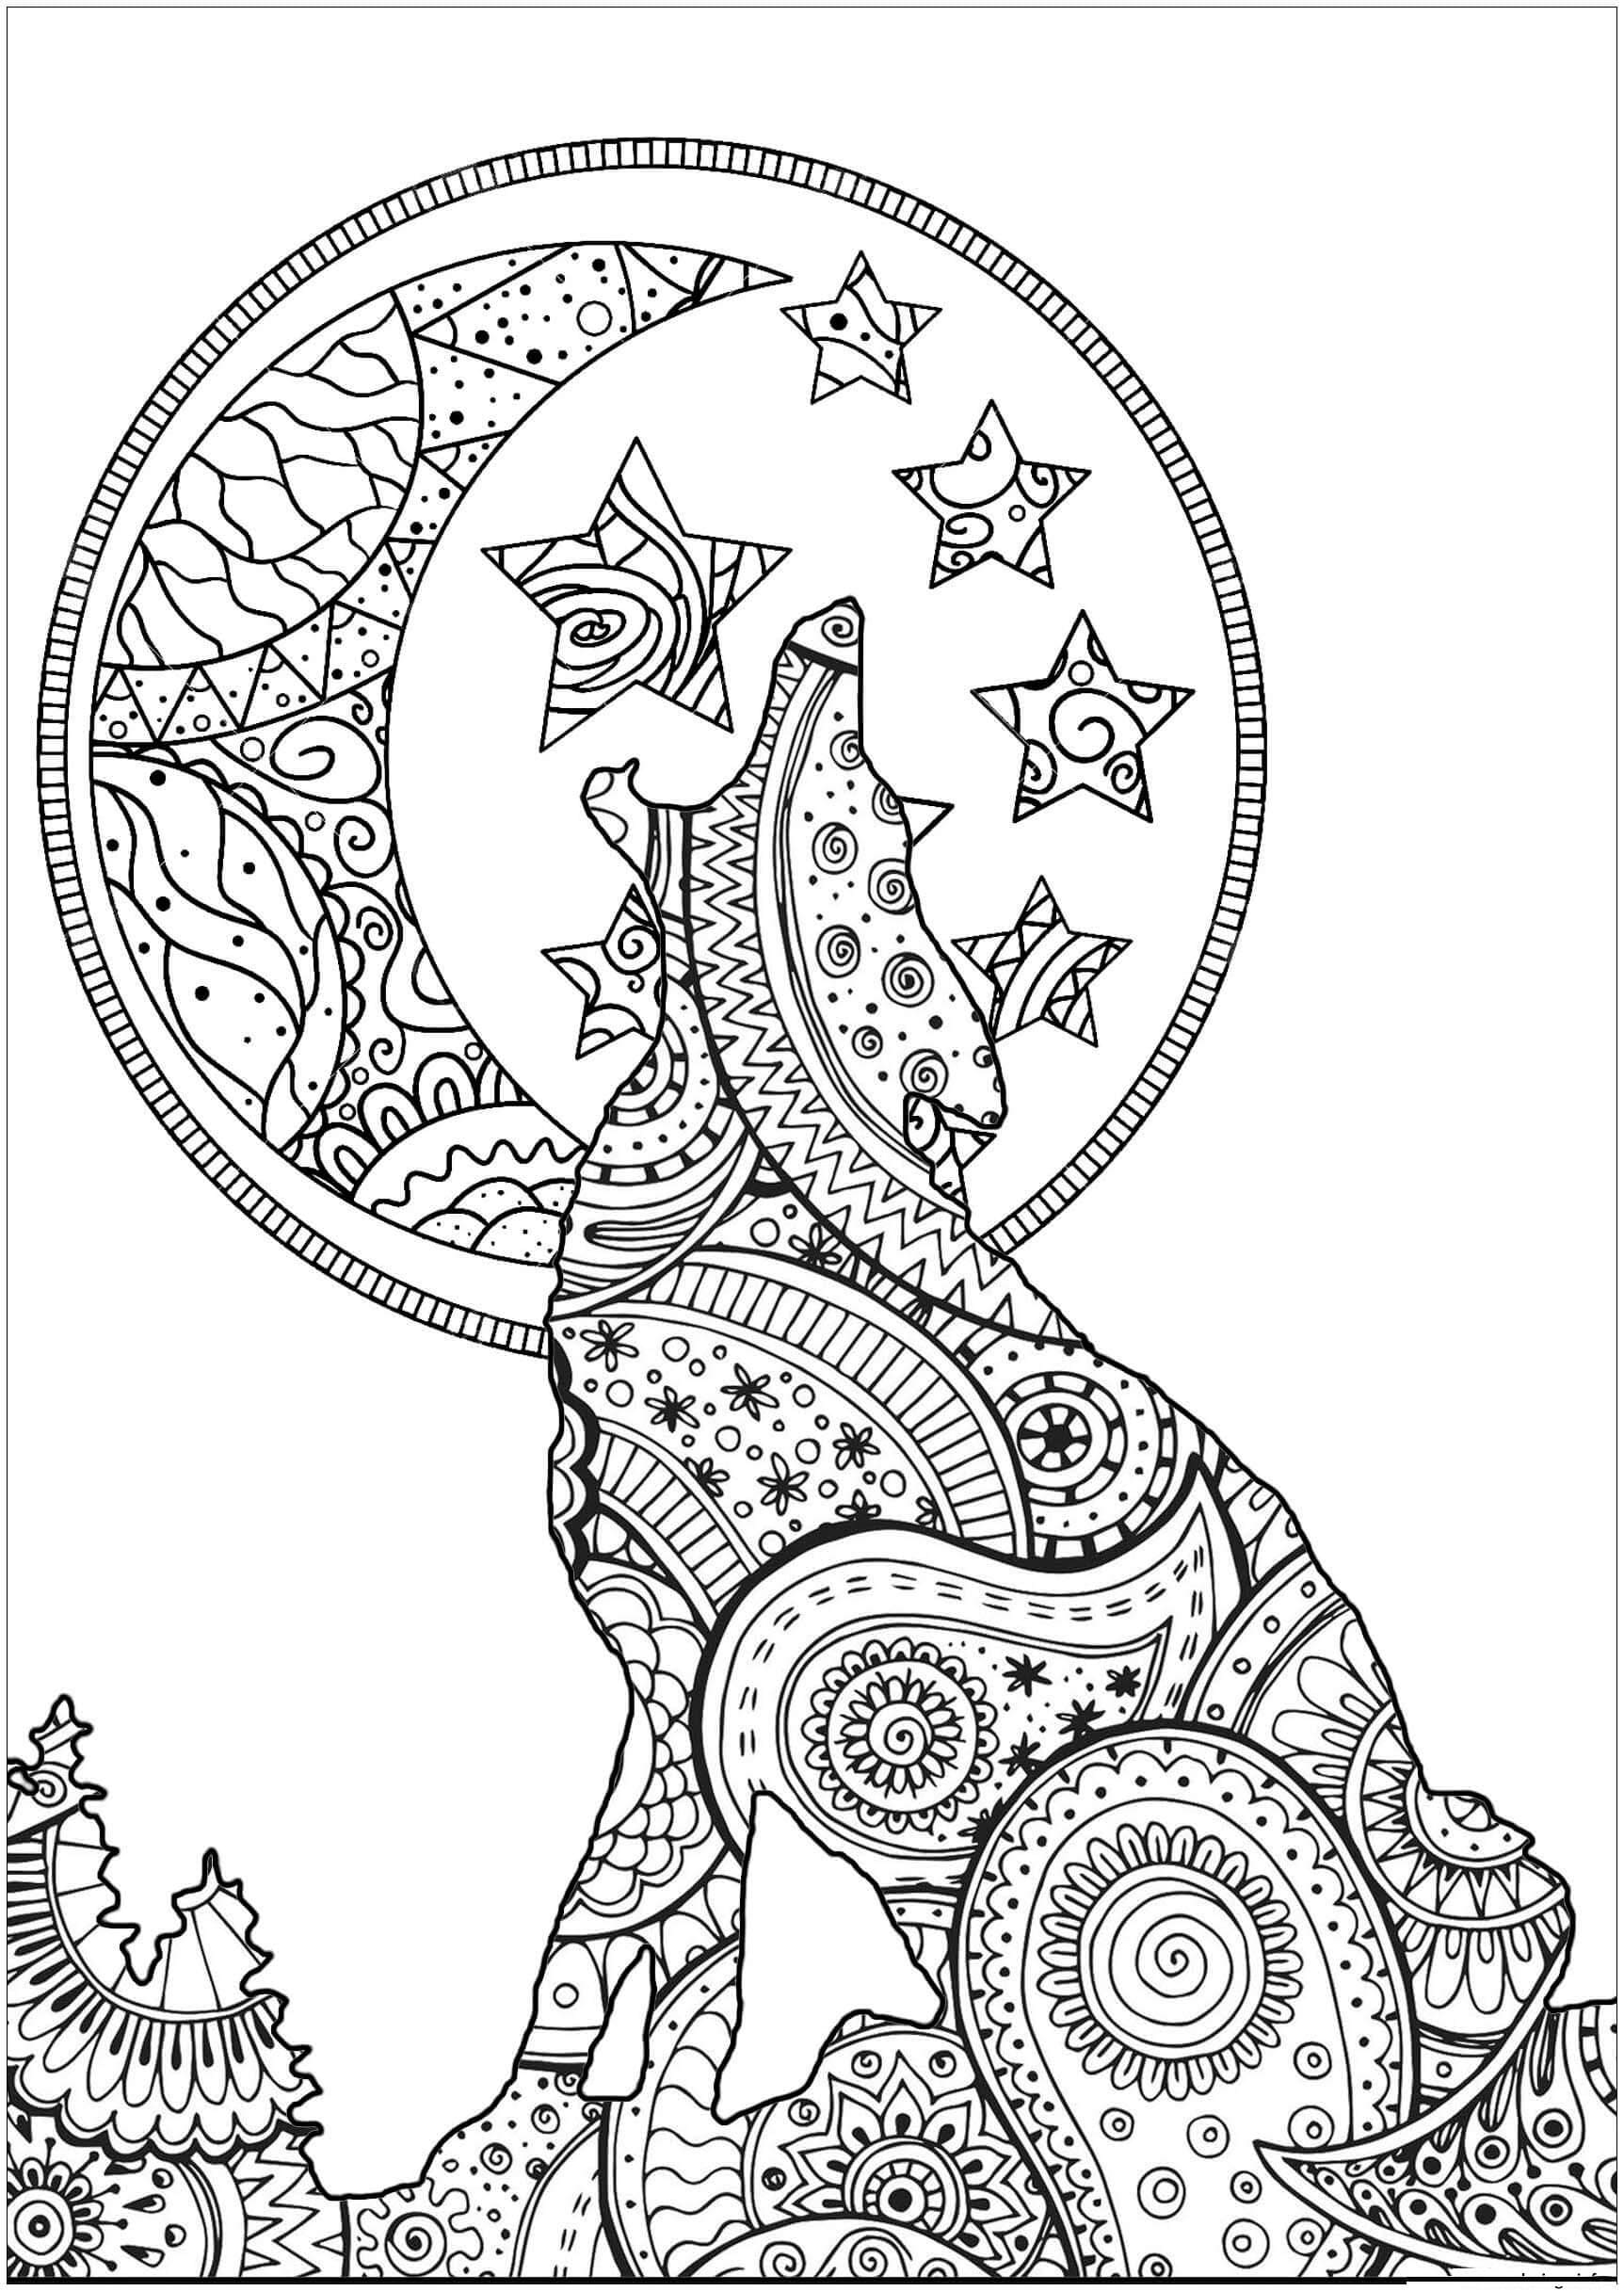 Zentangle Mandala de Loup coloring page